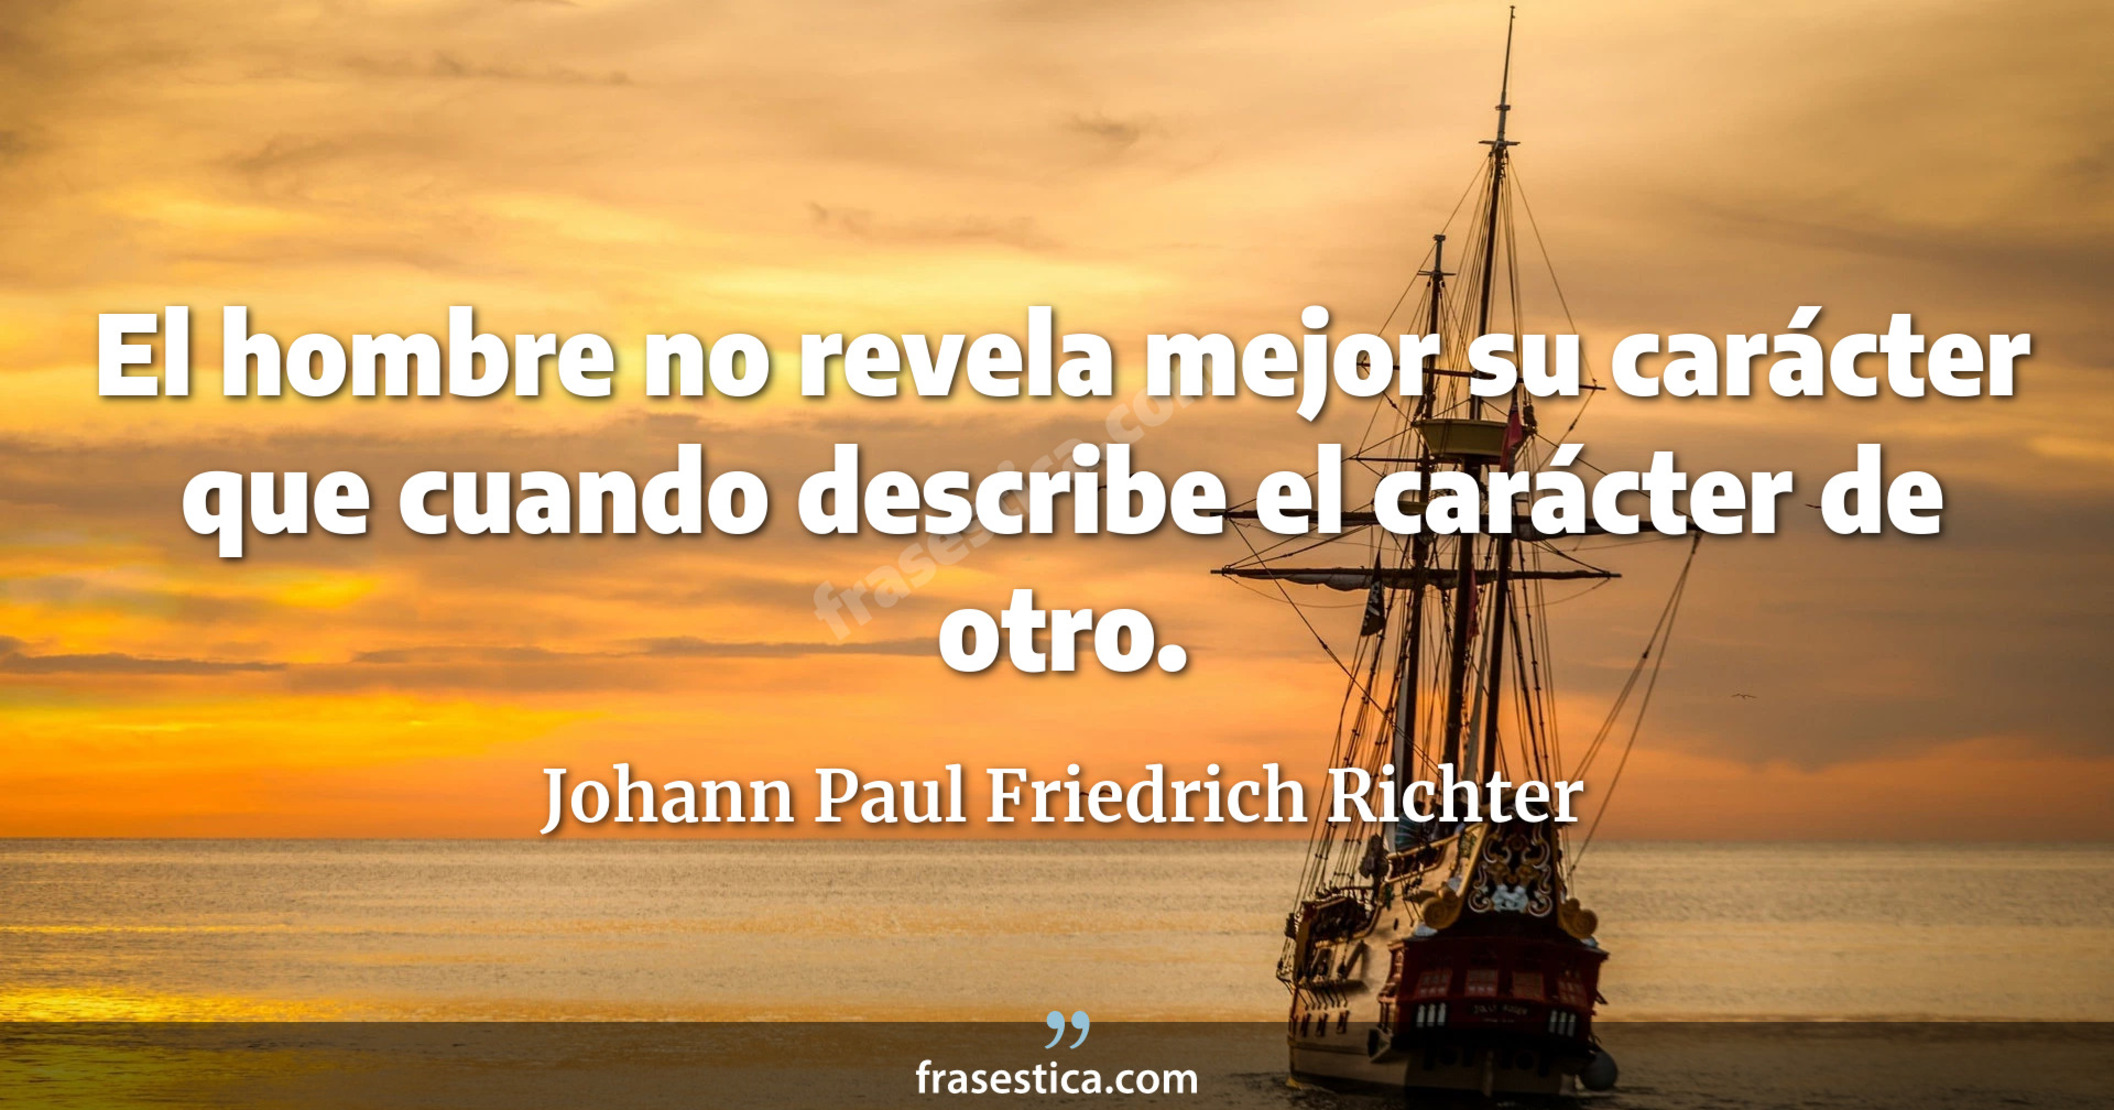 El hombre no revela mejor su carácter que cuando describe el carácter de otro. - Johann Paul Friedrich Richter